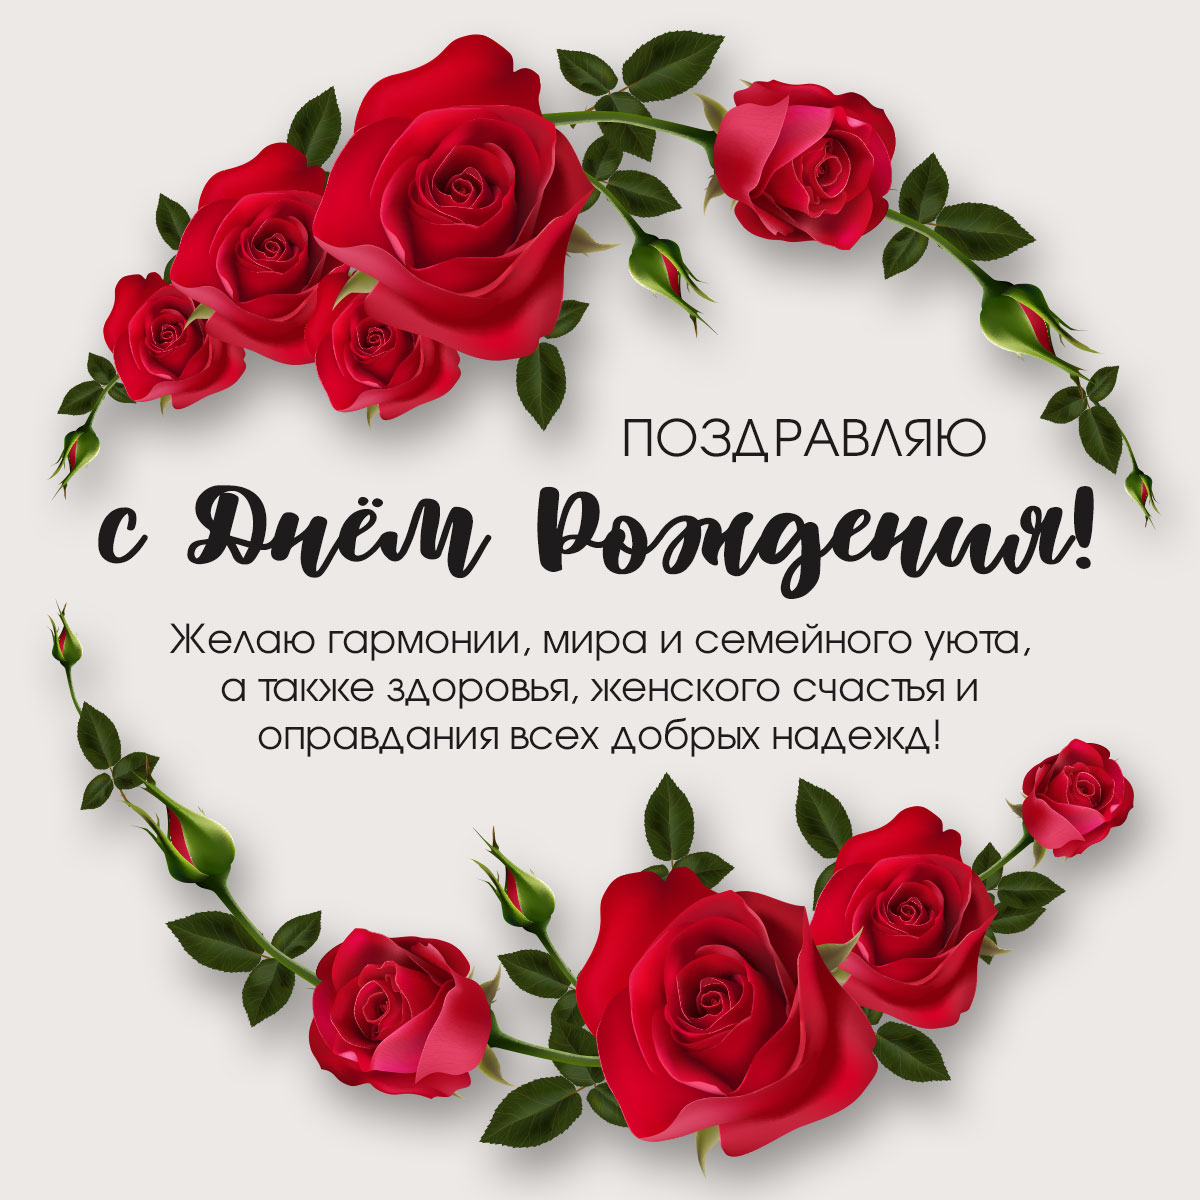 Картинка с текстом поздравления на день рождения женщине с красными розами.